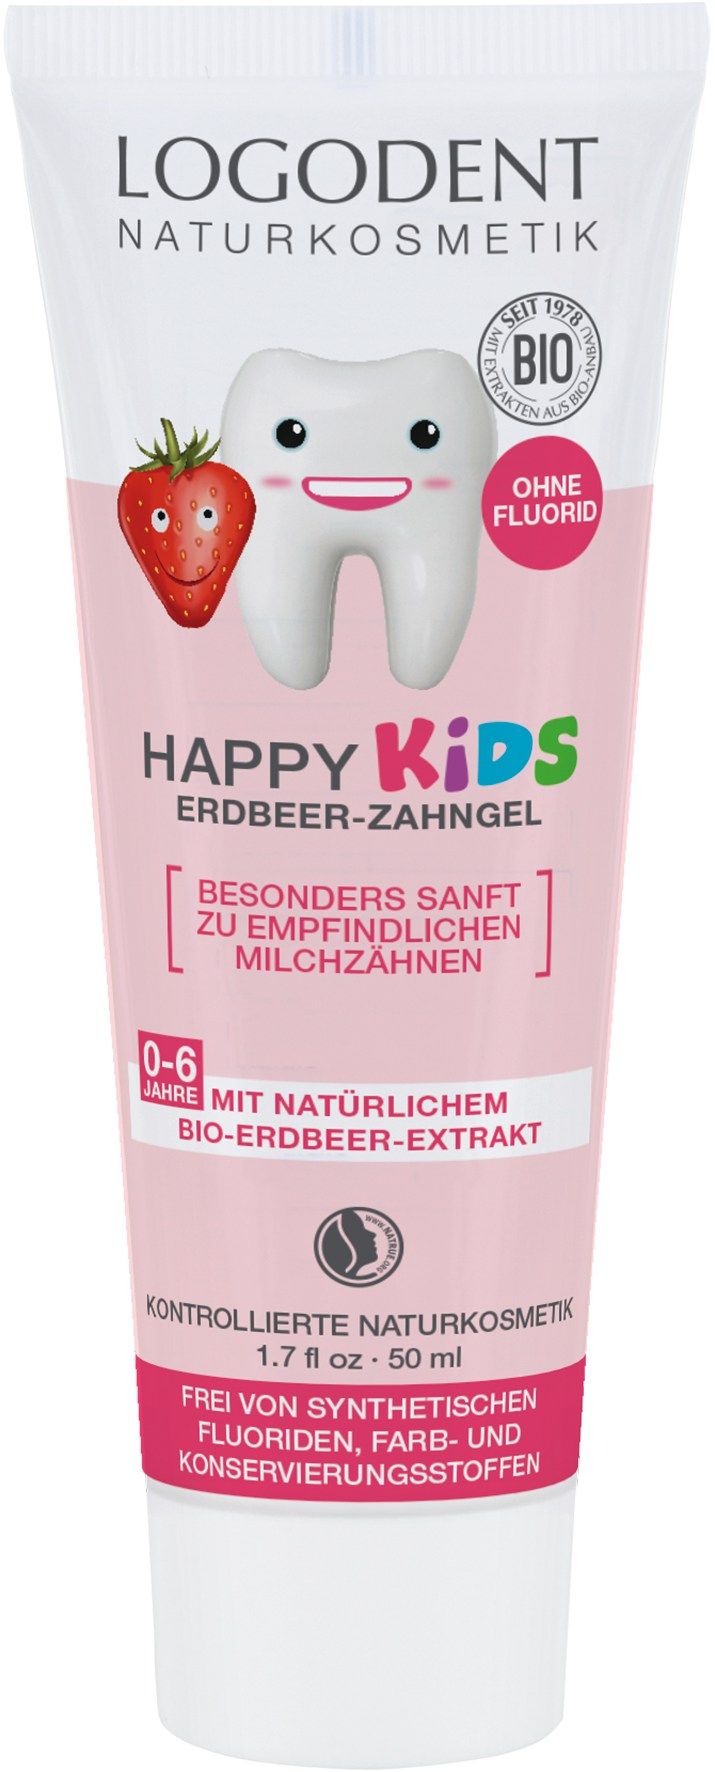 HAPPY KIDS Erdbeer-Zahngel